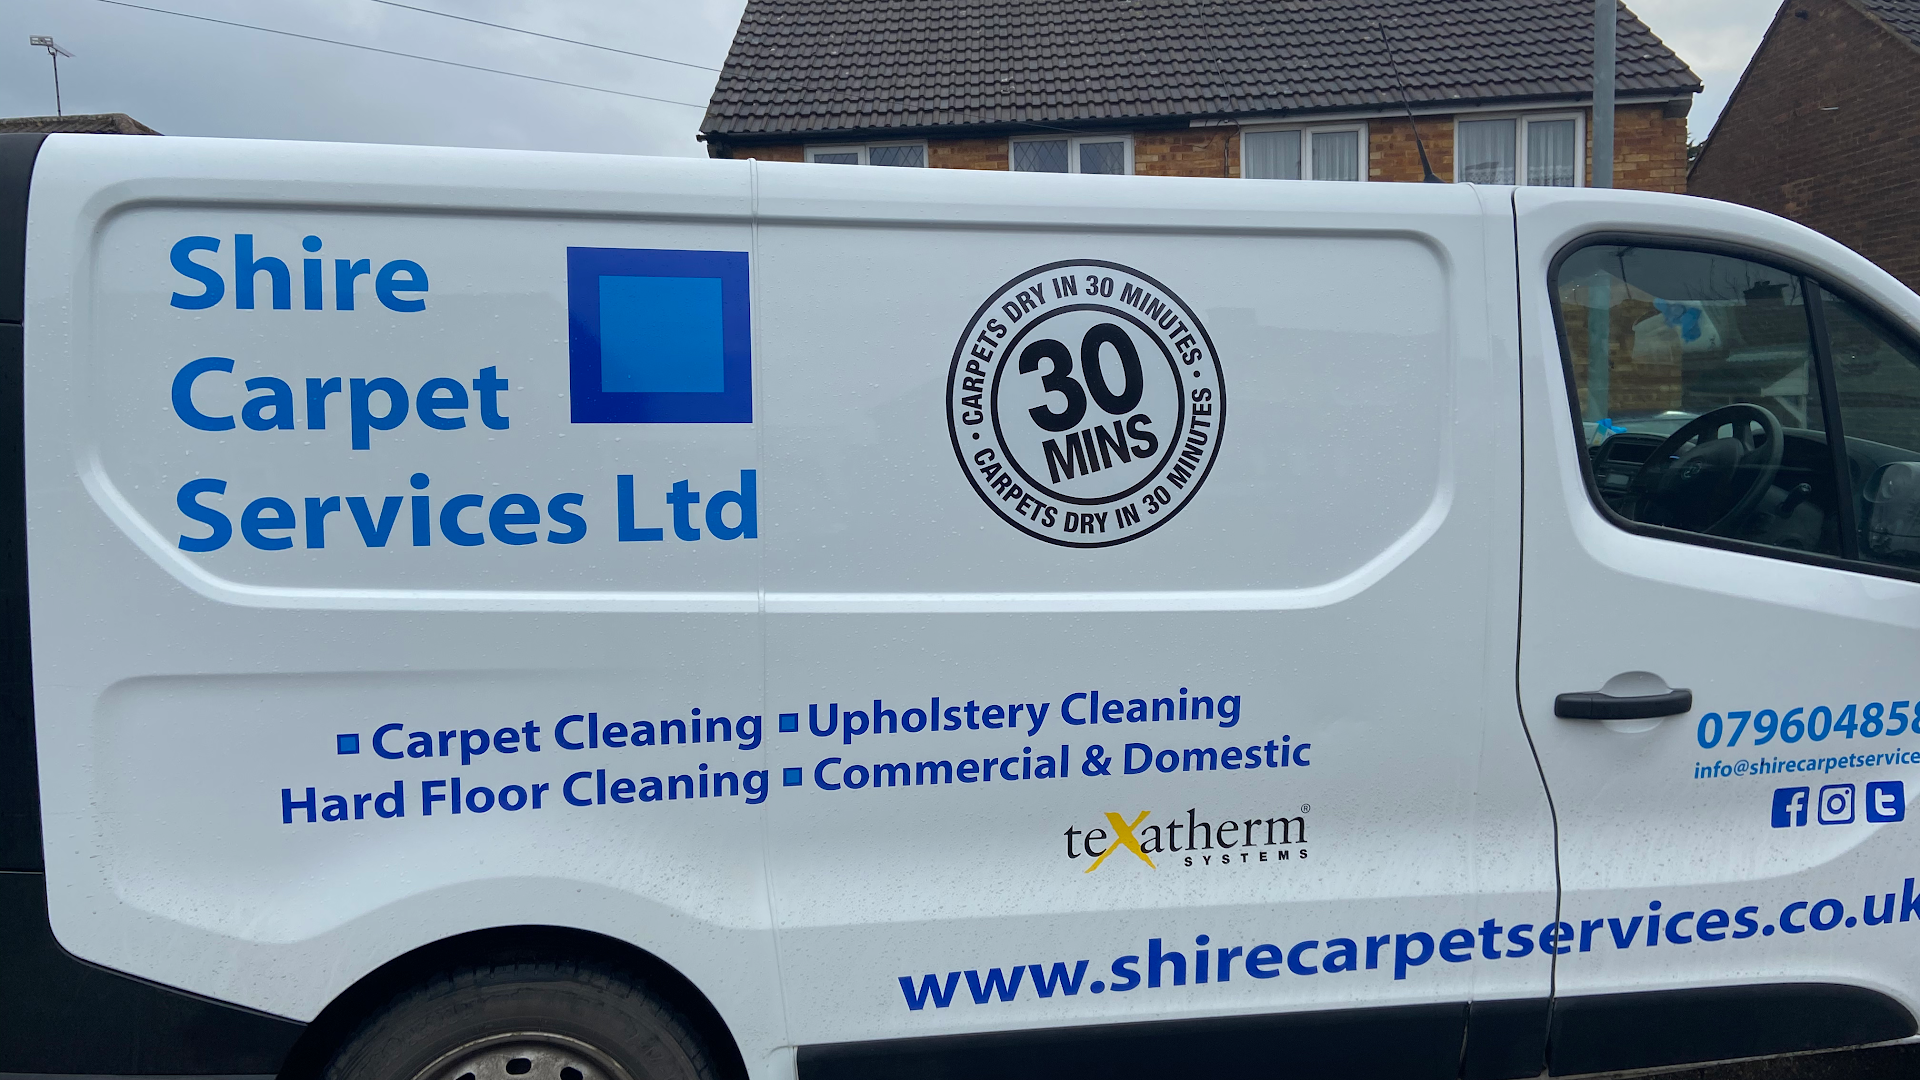 Shire Carpet Services Ltd.